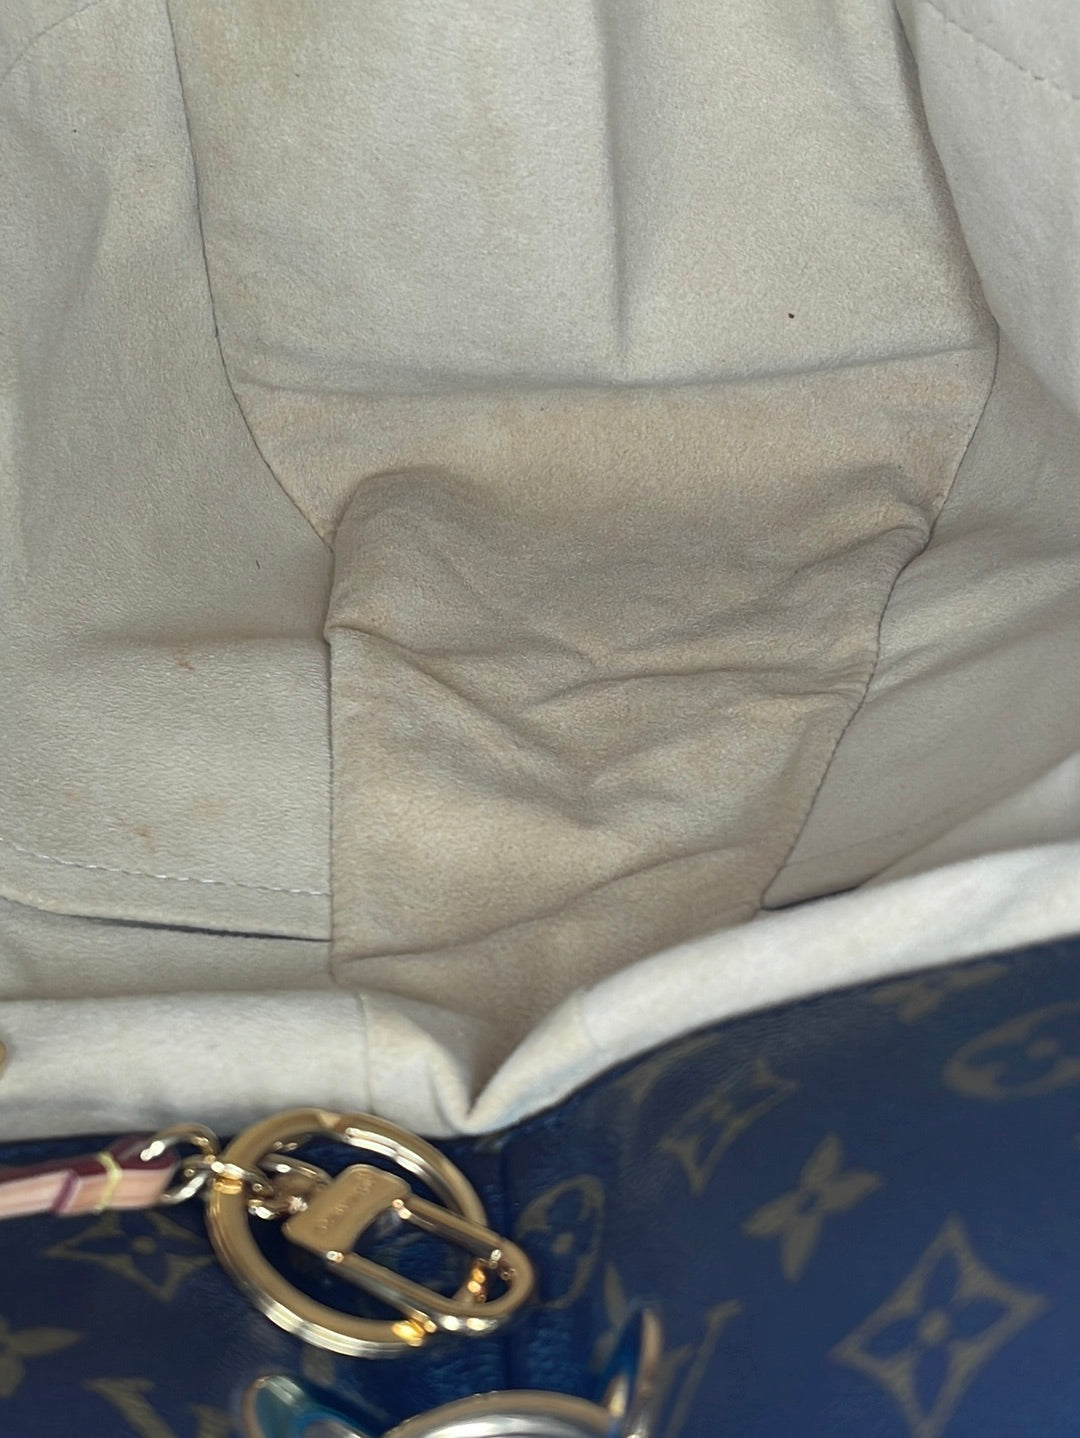 Authenticated used Louis Vuitton M40259 Artsy GM Monogram Tote Bag Canvas Women's Louis Vuitton, Adult Unisex, Size: (HxWxD): 36cm x 47cm x 17cm /